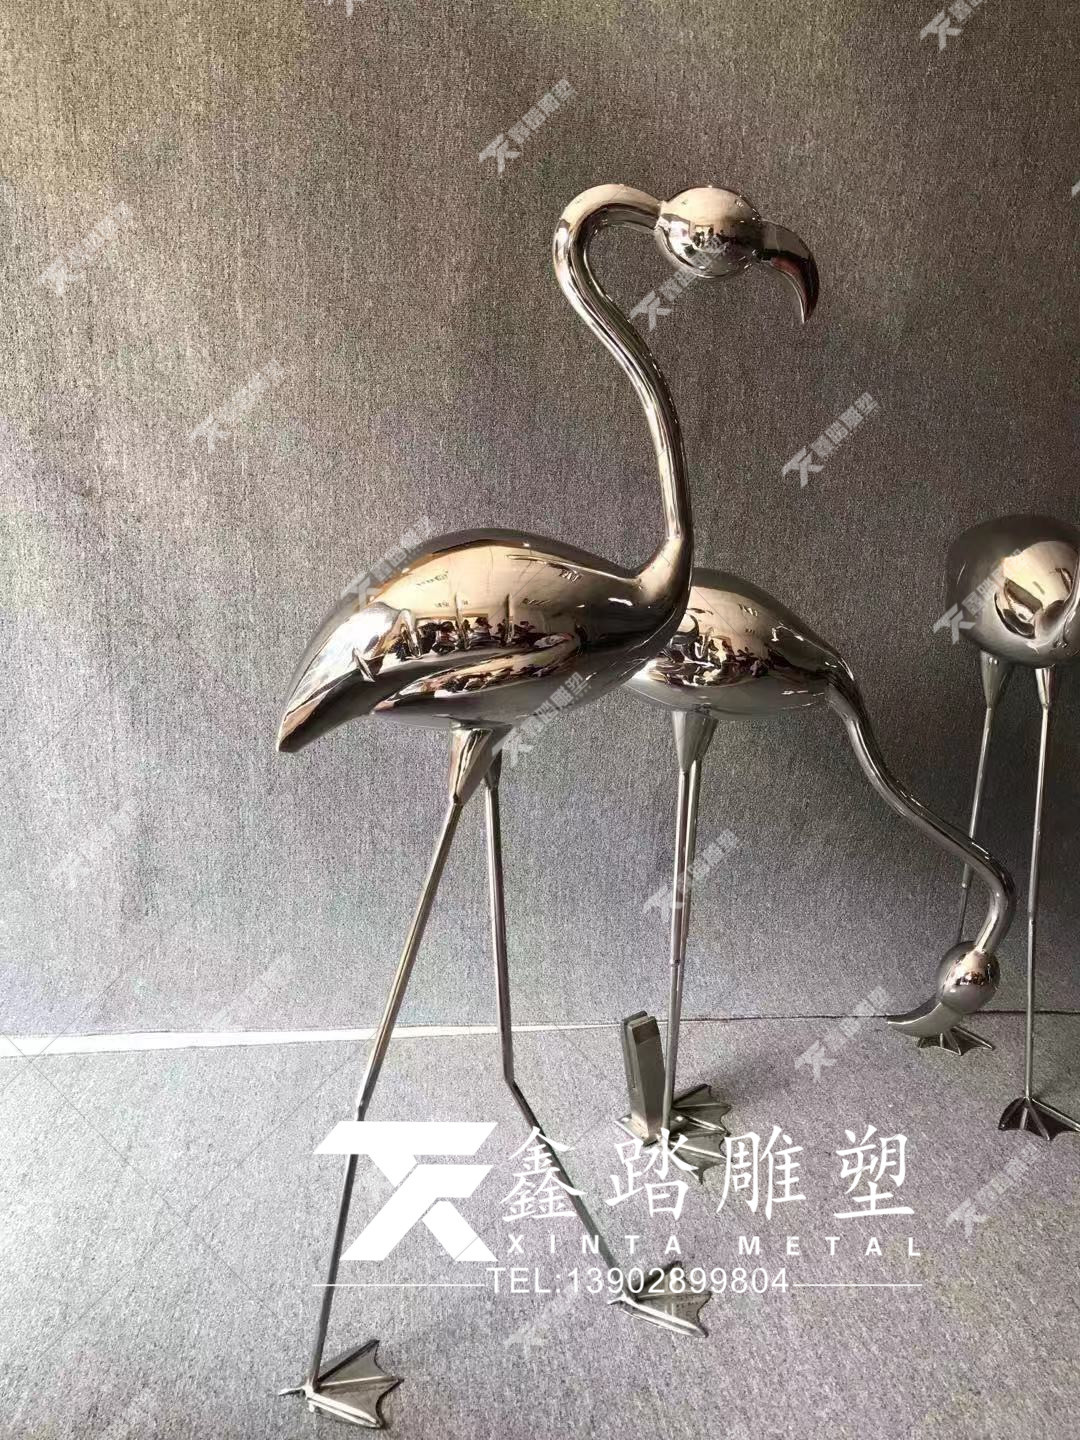 佛山市镜面不锈钢火烈鸟雕塑摆件厂家